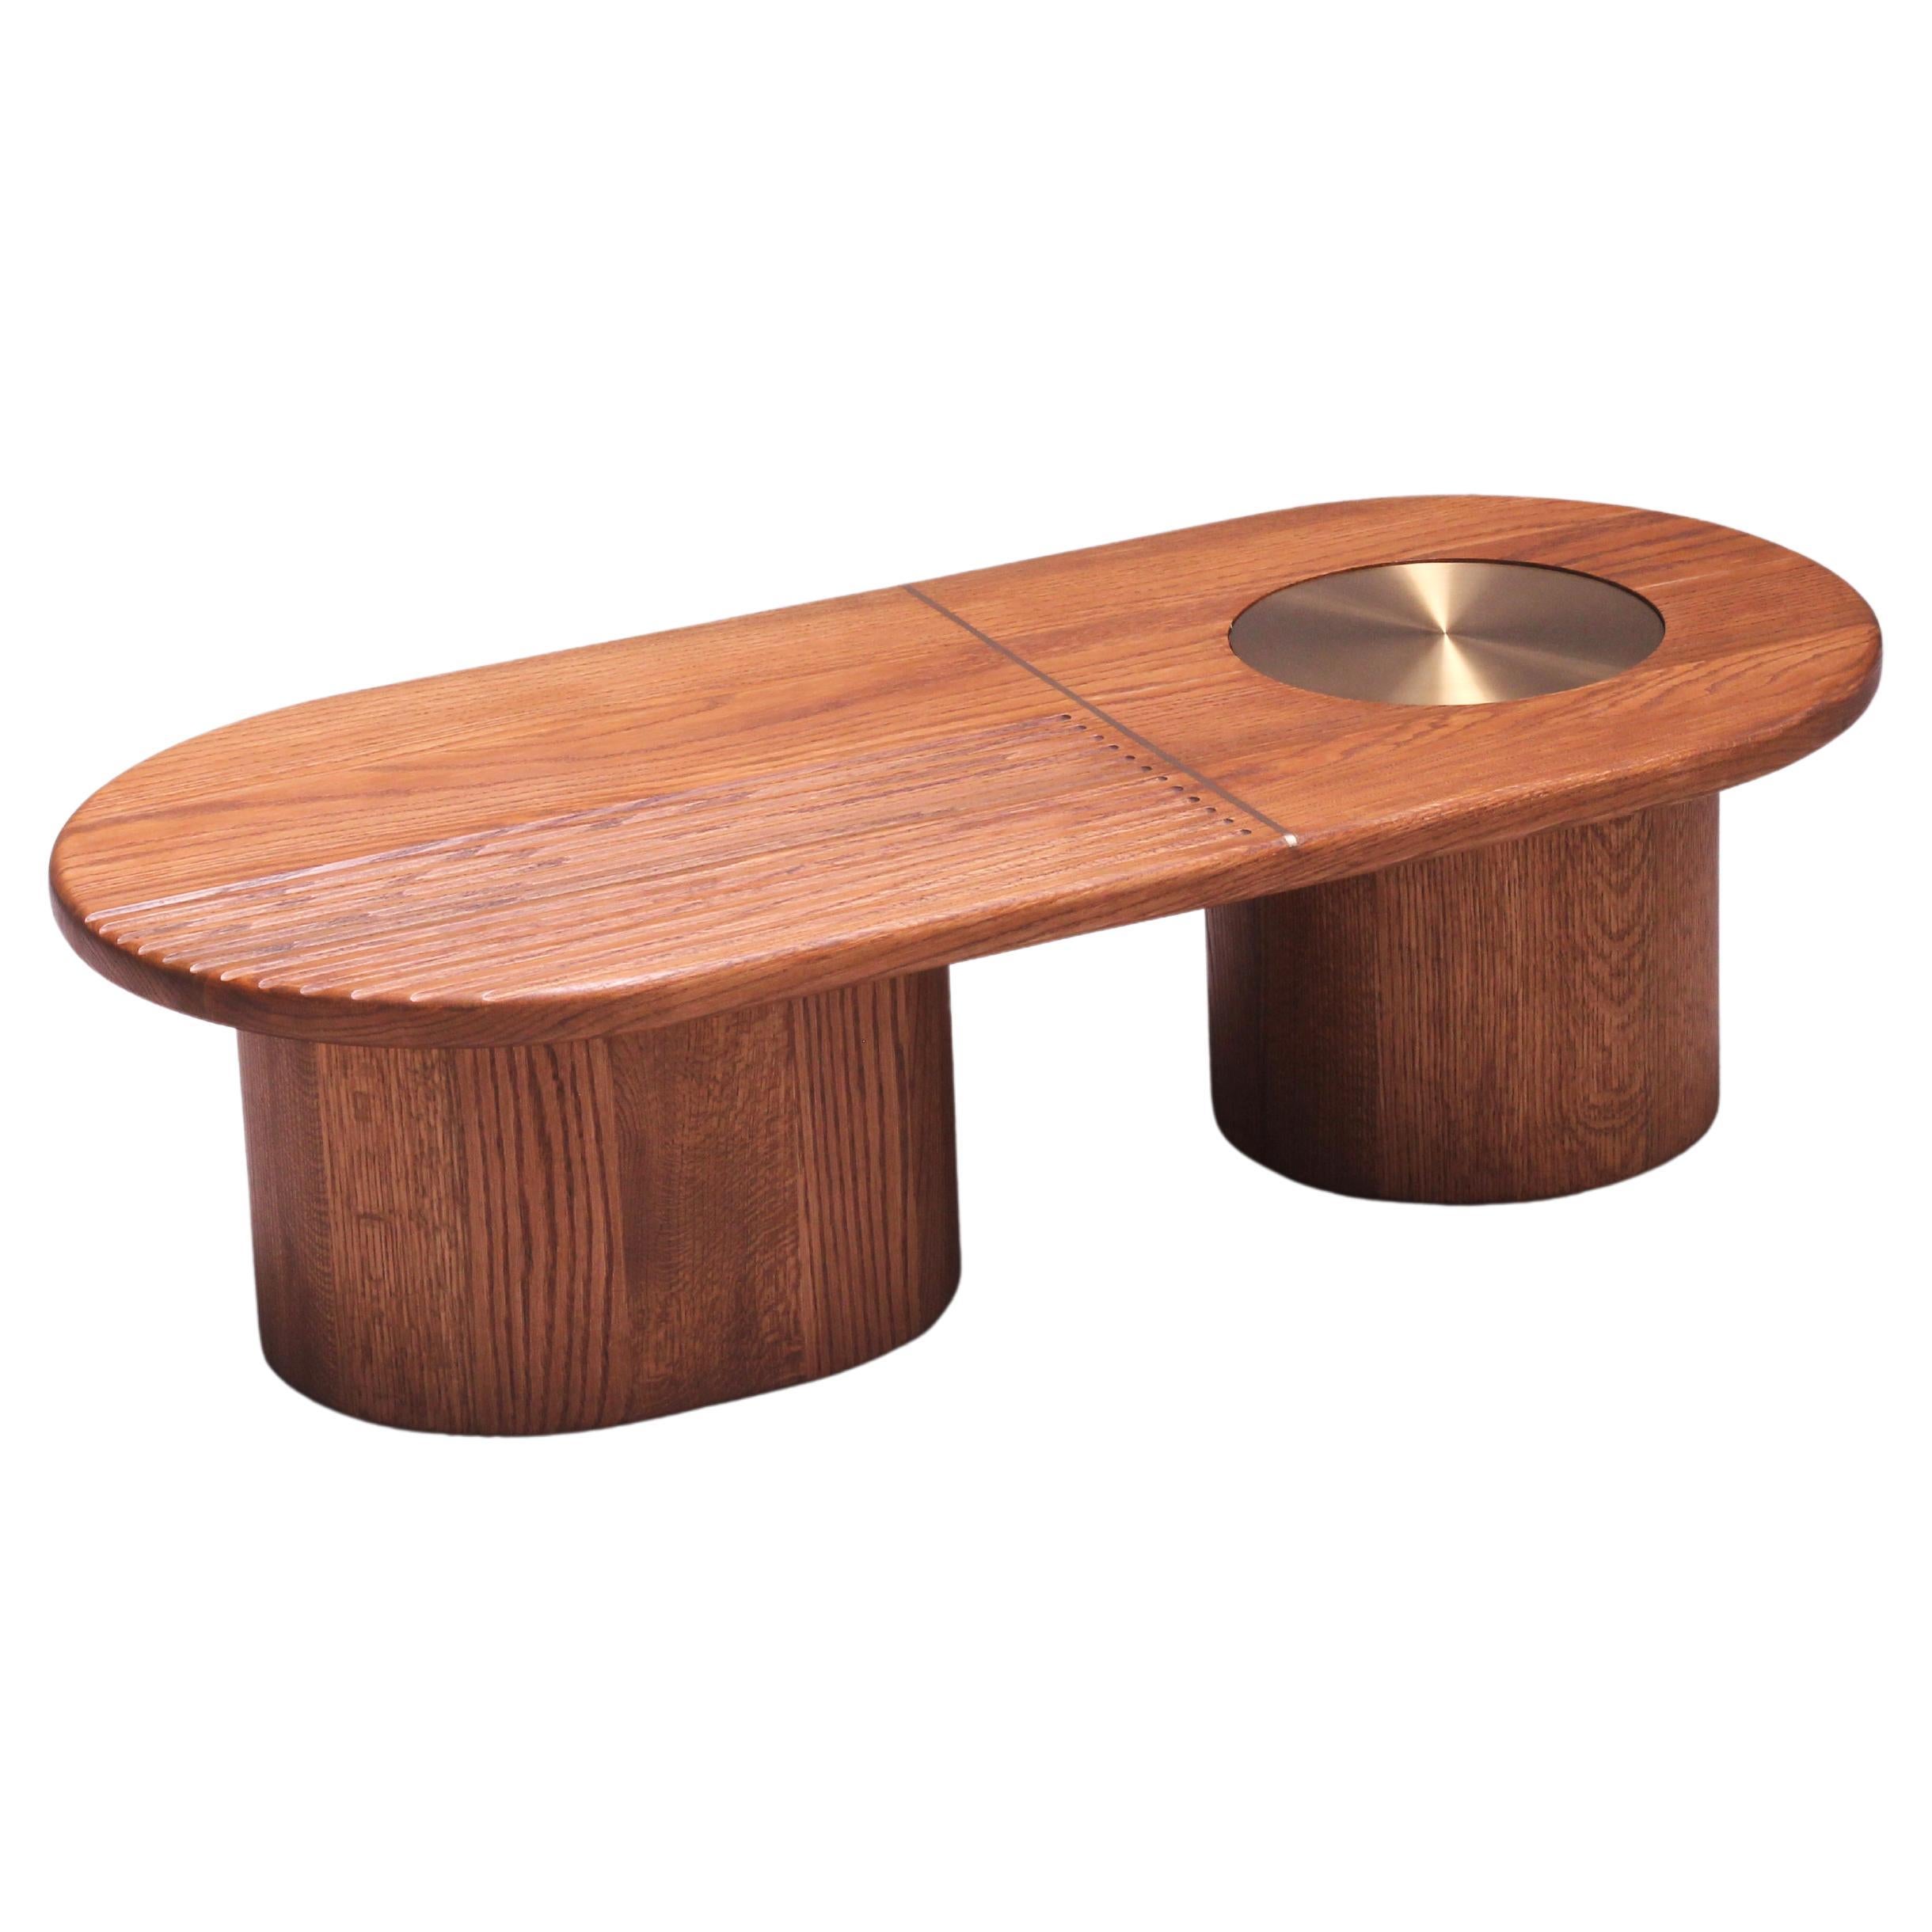 Table basse CELESTE en bois massif de chêne américain de fabrication moderne et organique avec laiton